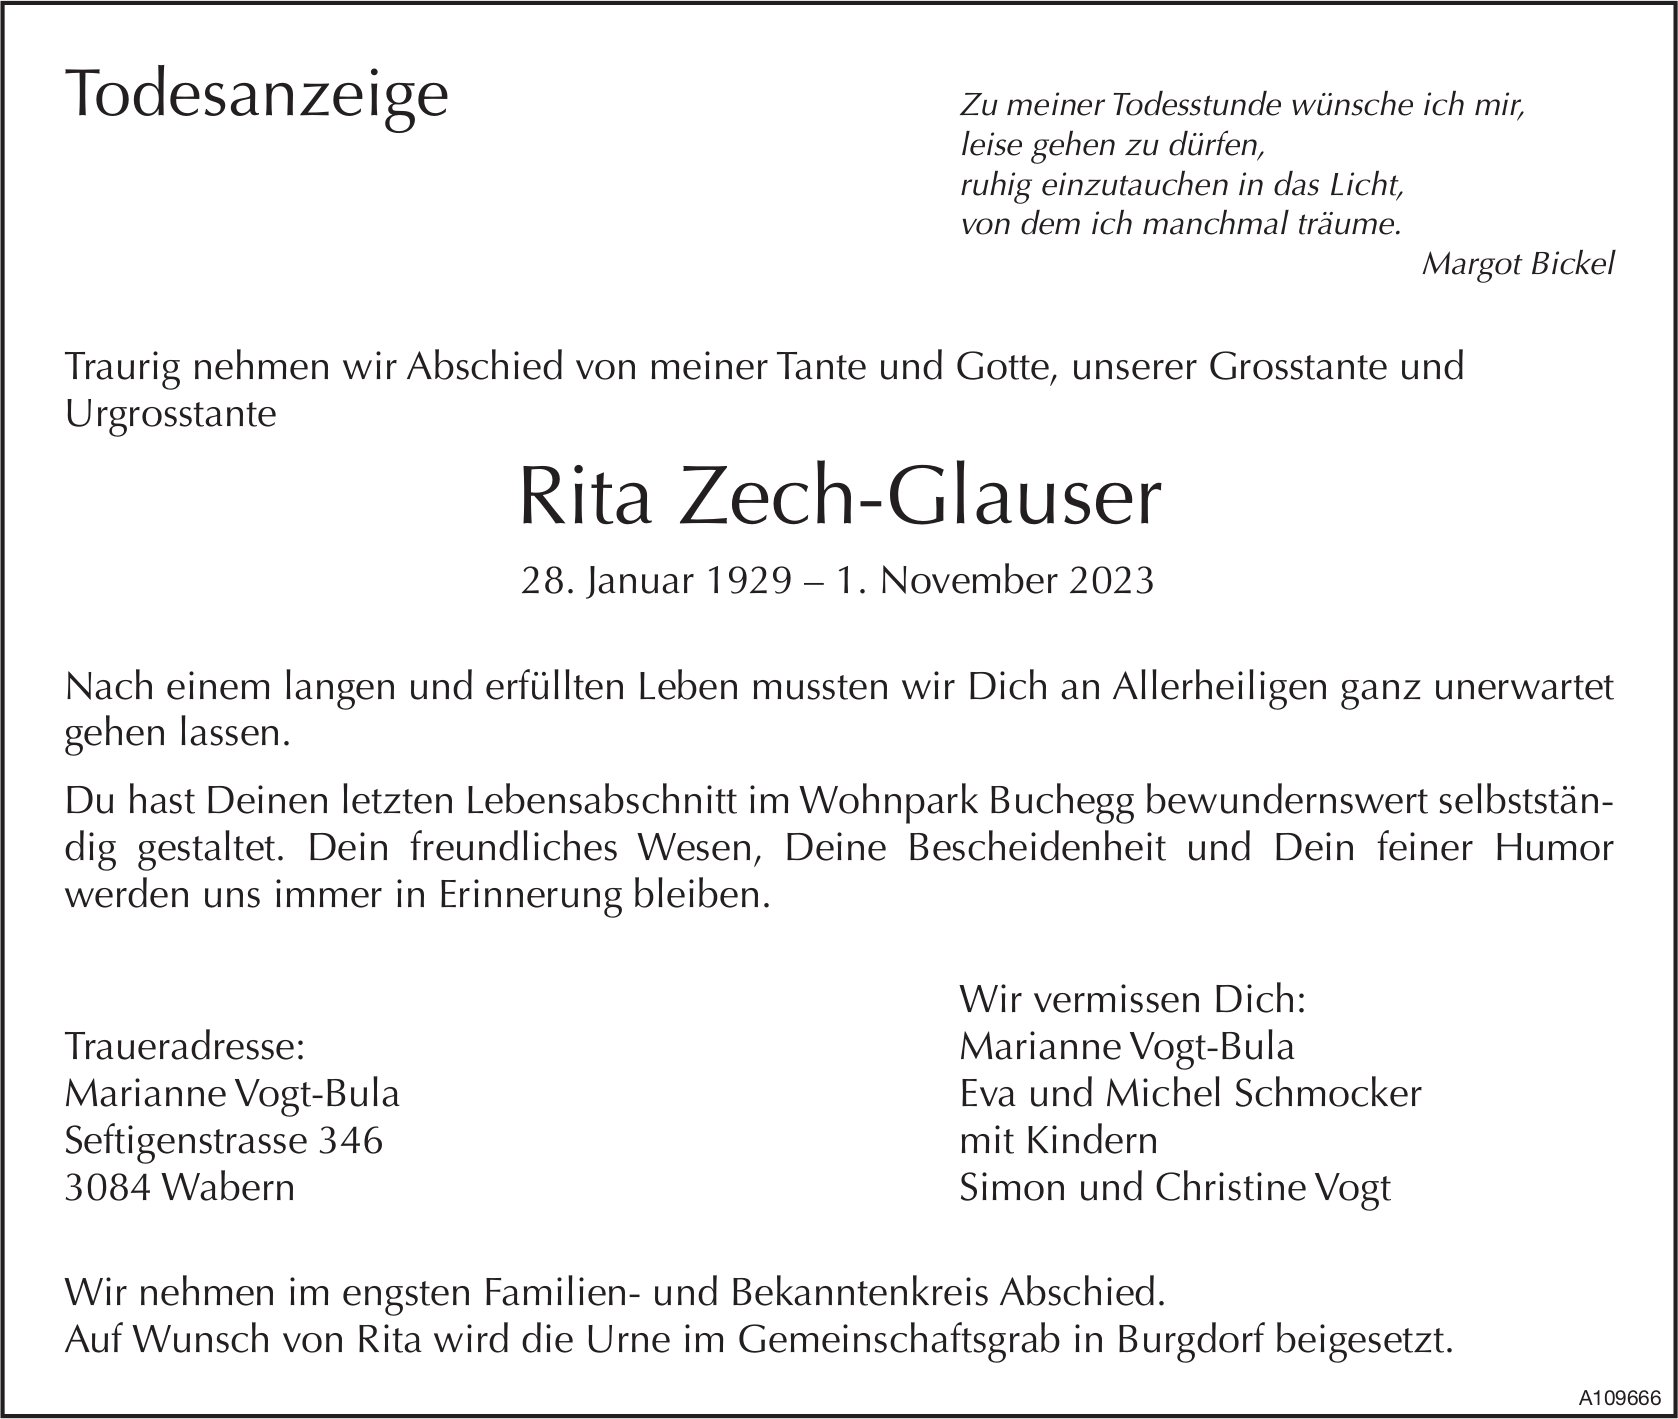 Rita Zech-Glauser, November 2023 / TA